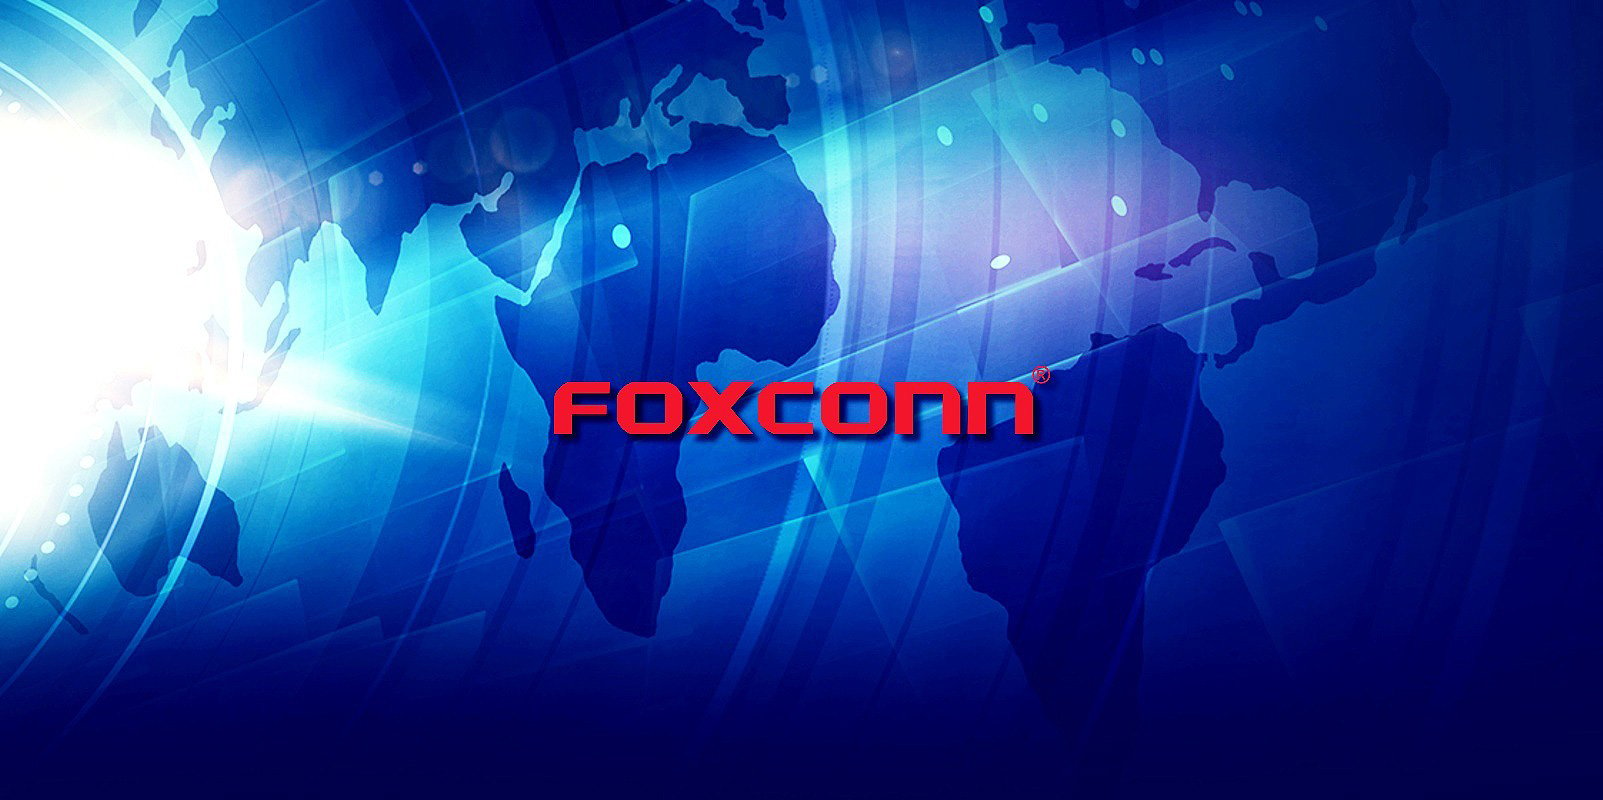 Foxconn confirma que el ataque de ransomware interrumpió la producción en México